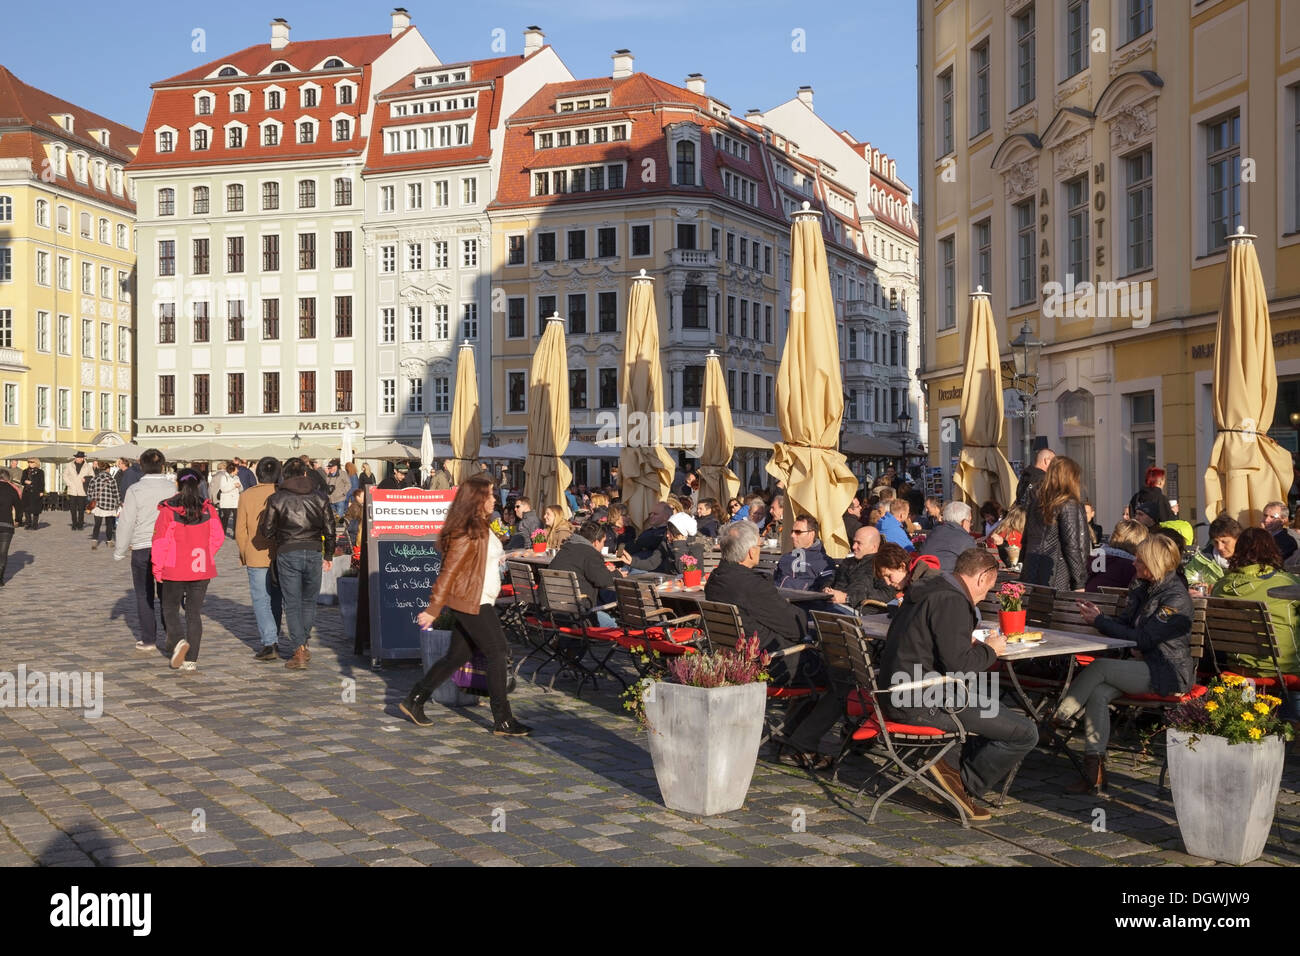 Eine der Frauenkirche Platz mit Restaurants und alten Gebäuden, Dresden, Sachsen, Deutschland Stockfoto